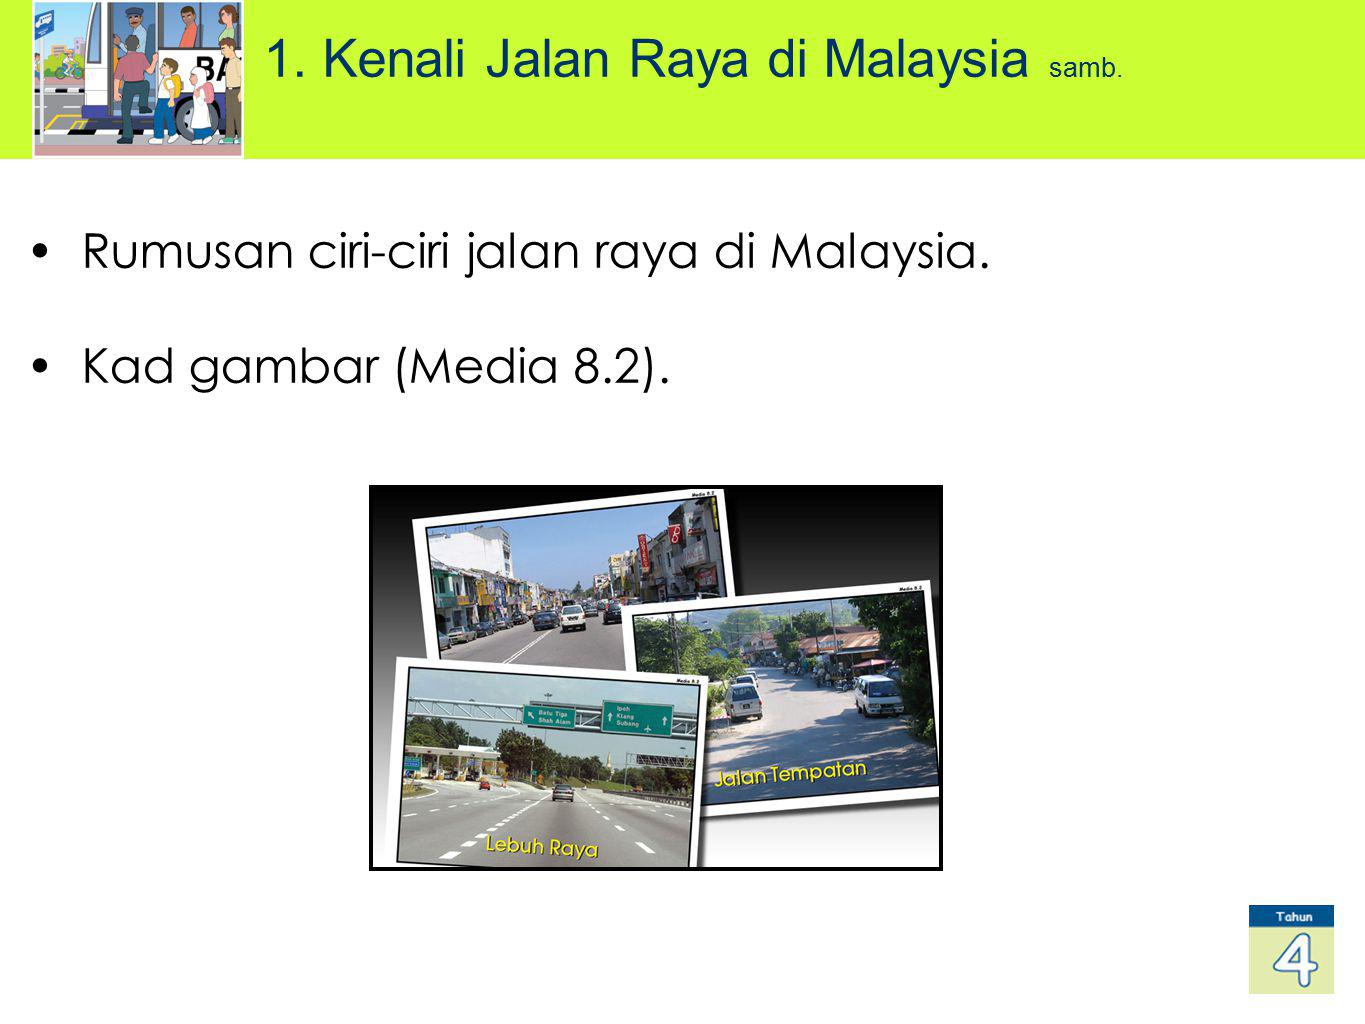 1. Kenali Jalan Raya di Malaysia samb.